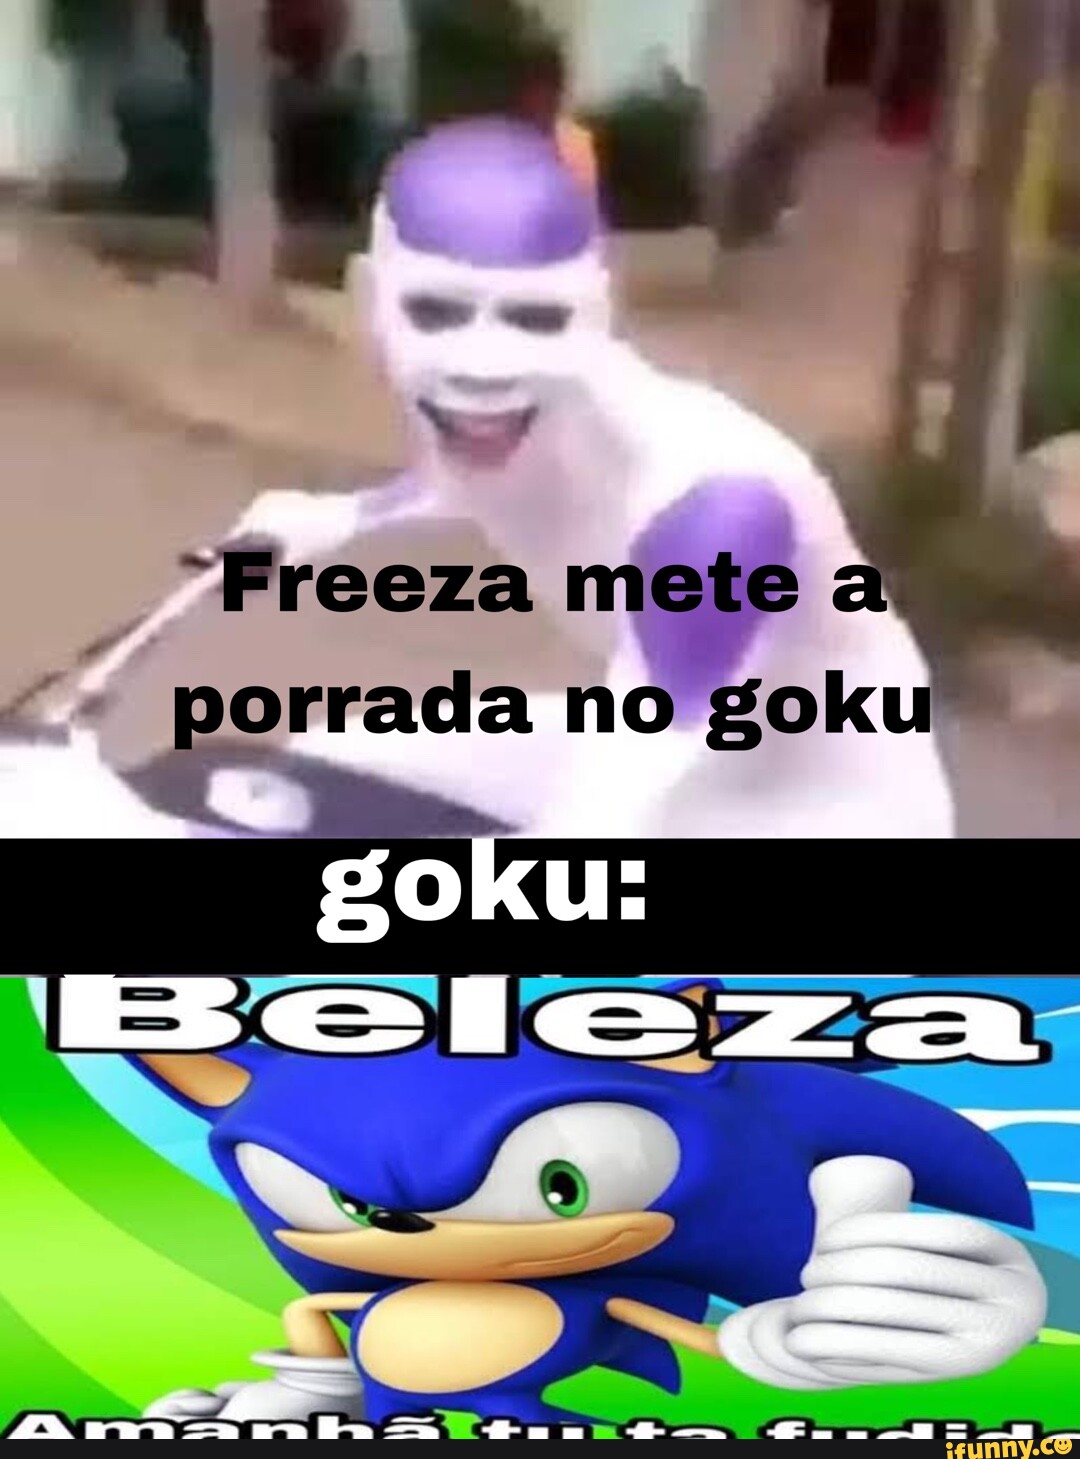 Memes de vídeo Gl2HusxcA por Duzinho: 4 comentários - iFunny Brazil